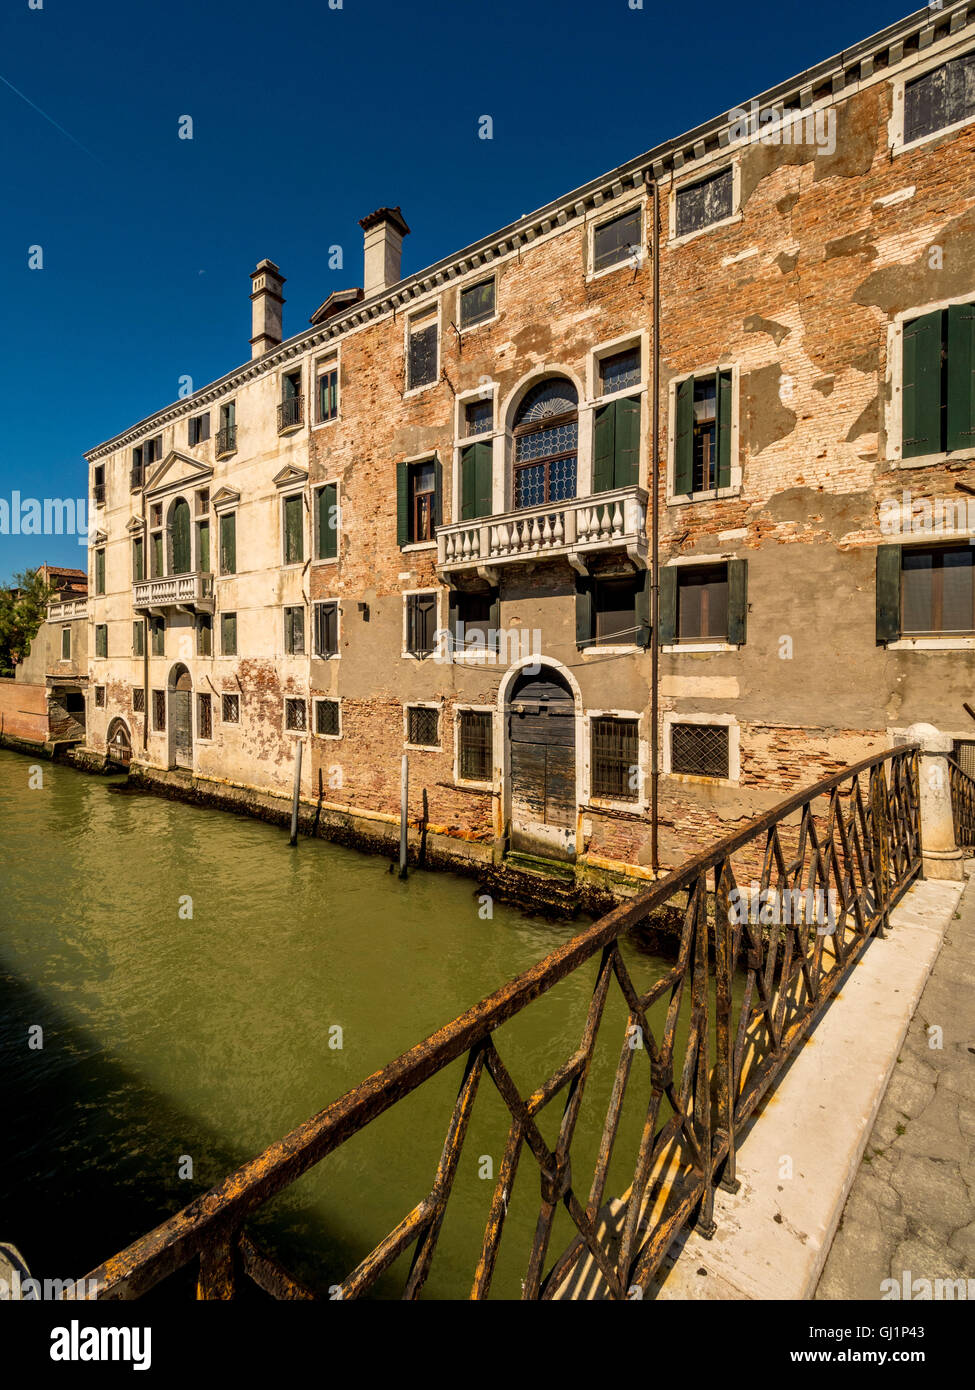 Du côté de canal traditionnelle, avec un rendu floconneux et briques apparentes. Venise, Italie. Banque D'Images